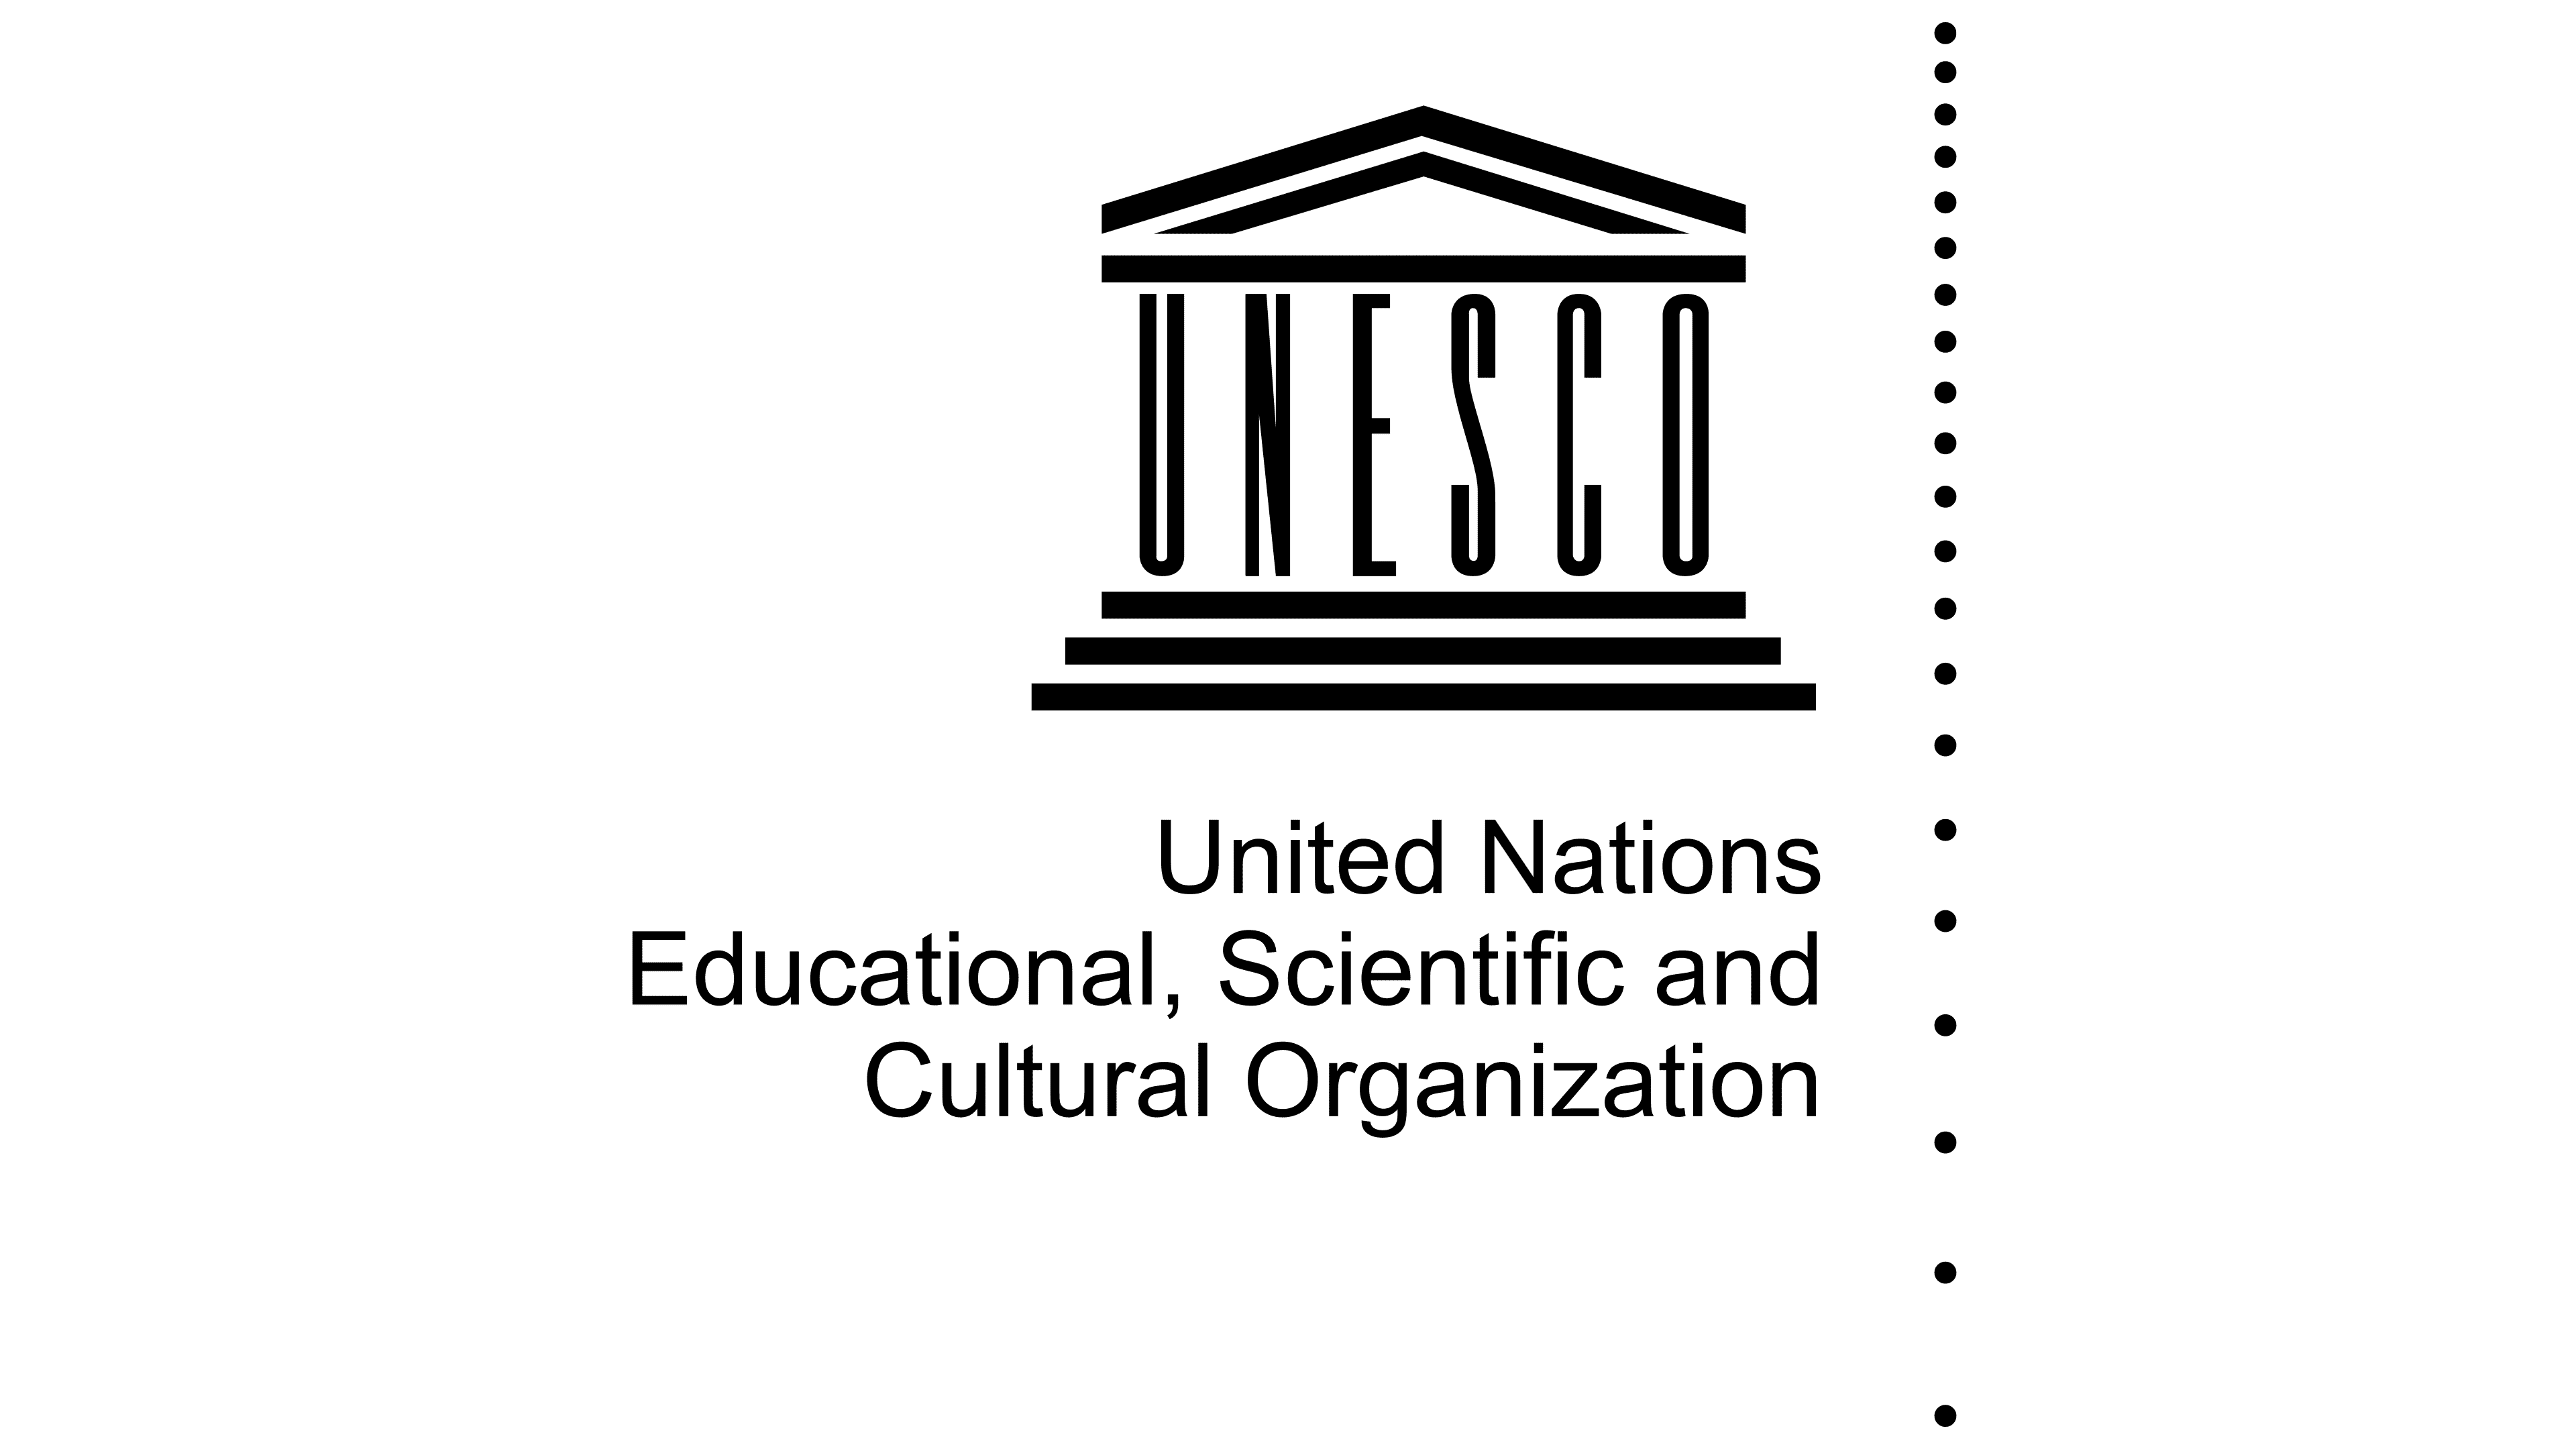 Whc unesco. ЮНЕСКО. ЮНЕСКО эмблема. Документы ЮНЕСКО. Символ ЮНЕСКО.